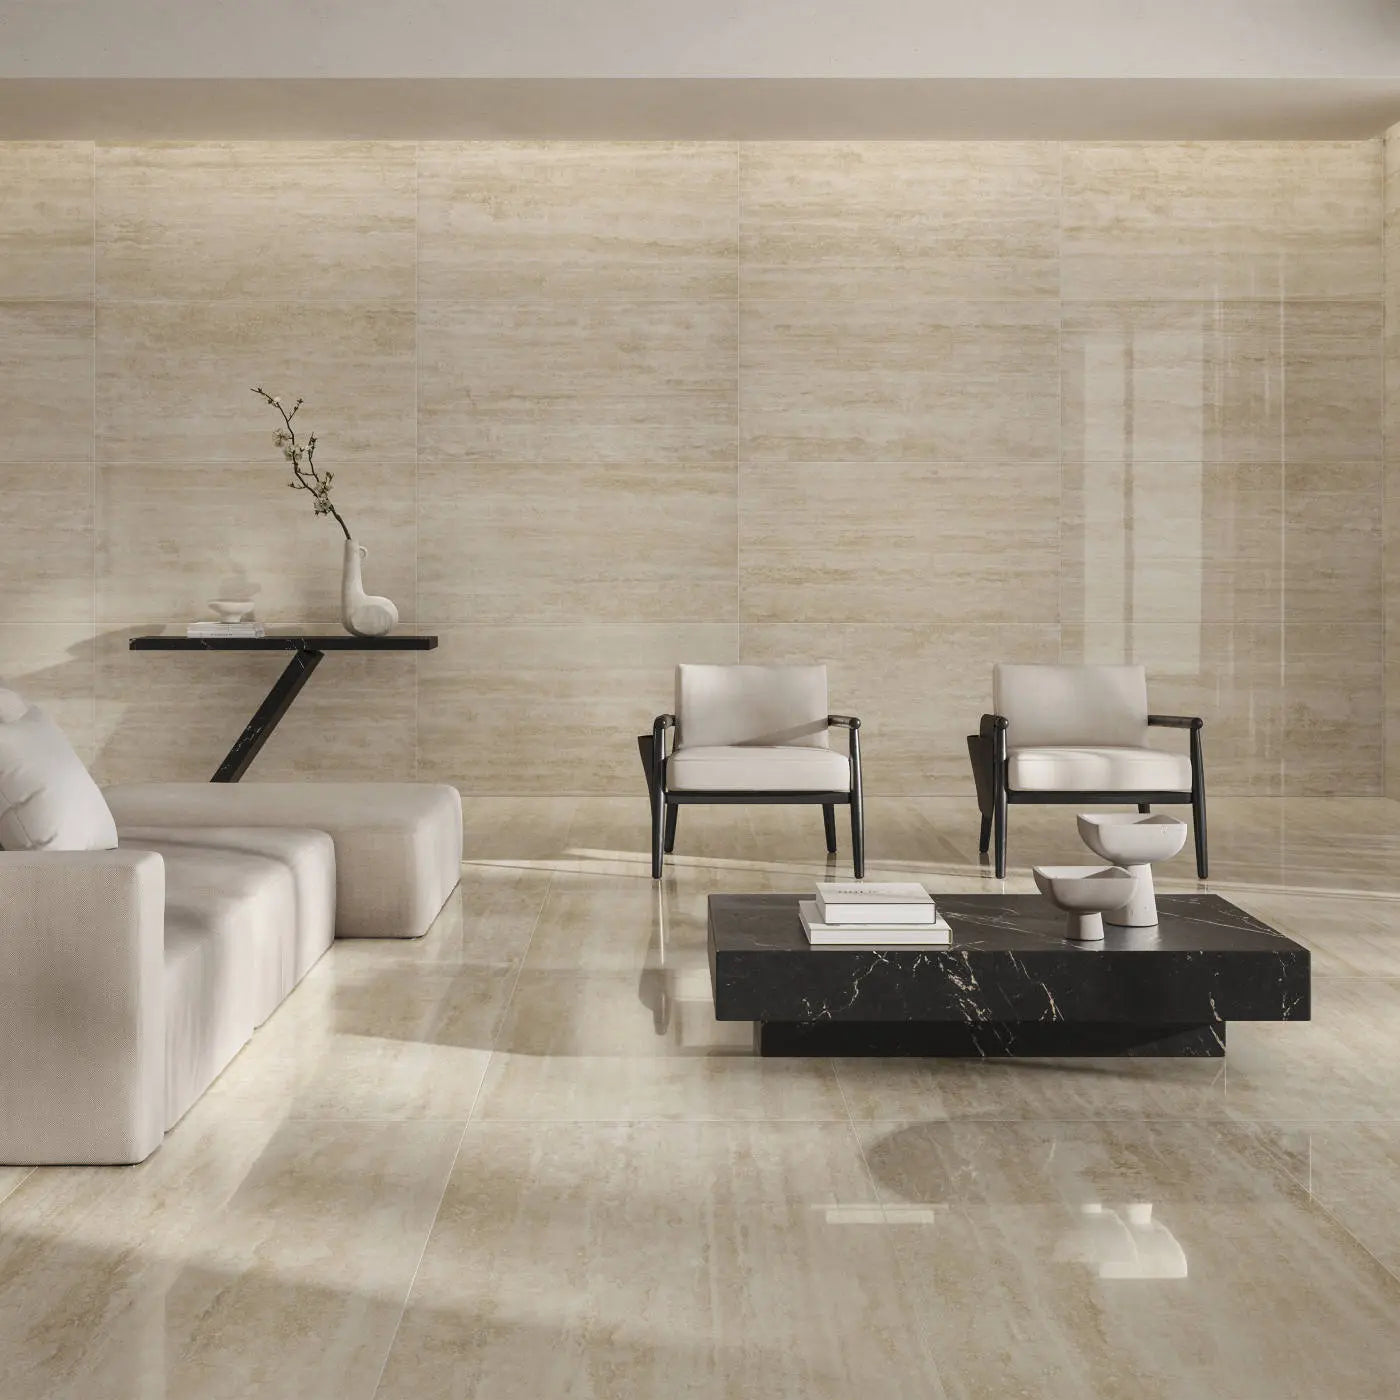 Sala con recubrimiento de mármol pulido en tono beige y una mesa de centro de mármol negro, creando un ambiente limpio y ordenado